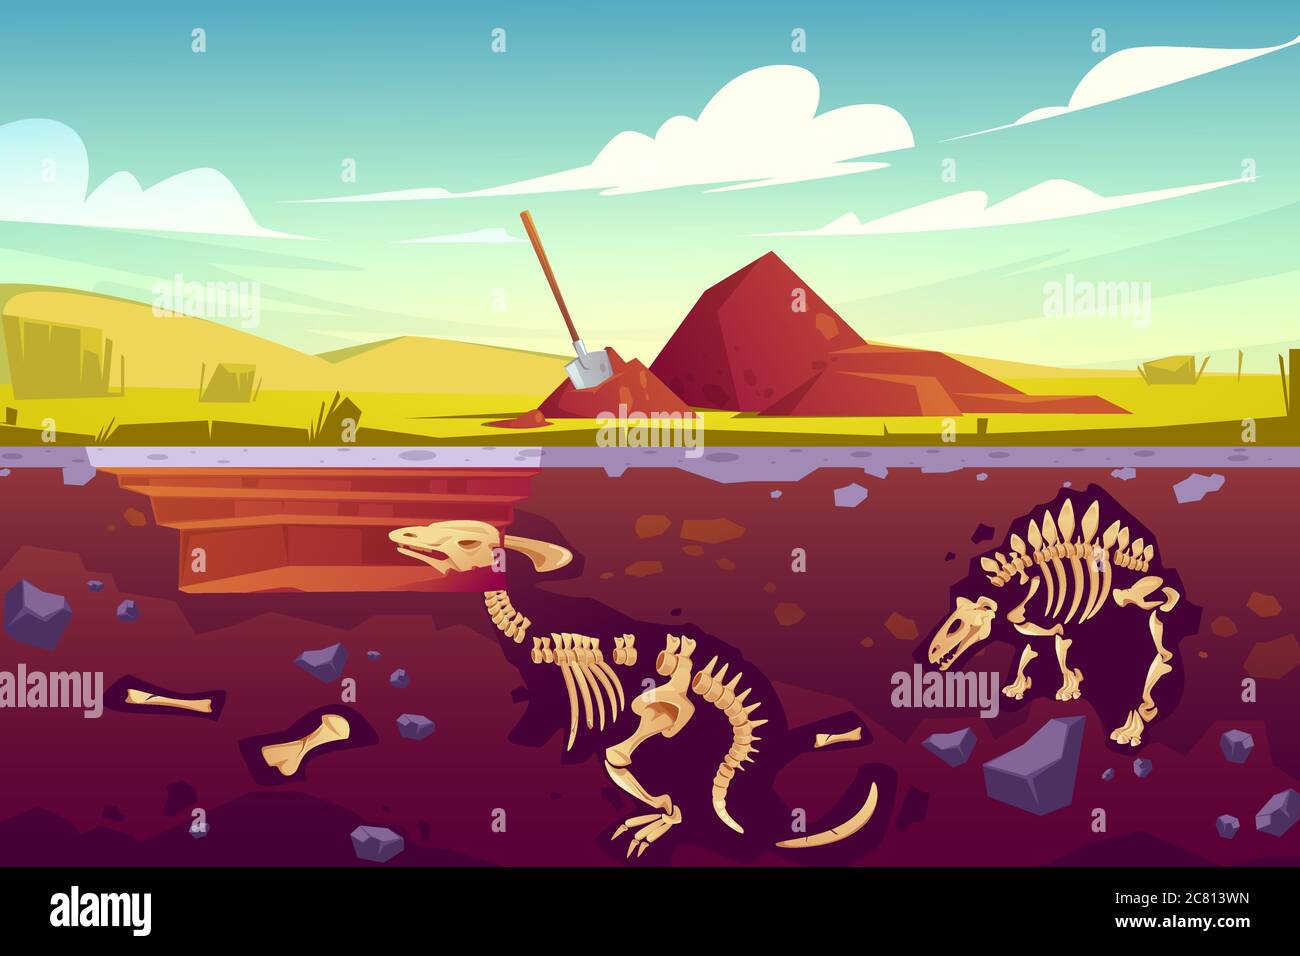 Scavi, paleontologia e opere archeologiche dei dinosauri fossili. Vettore cartoon illustrazione del paesaggio con pillola di terreno, pala, scheletri sepolti di rettili preistorici sotterranei Illustrazione Vettoriale